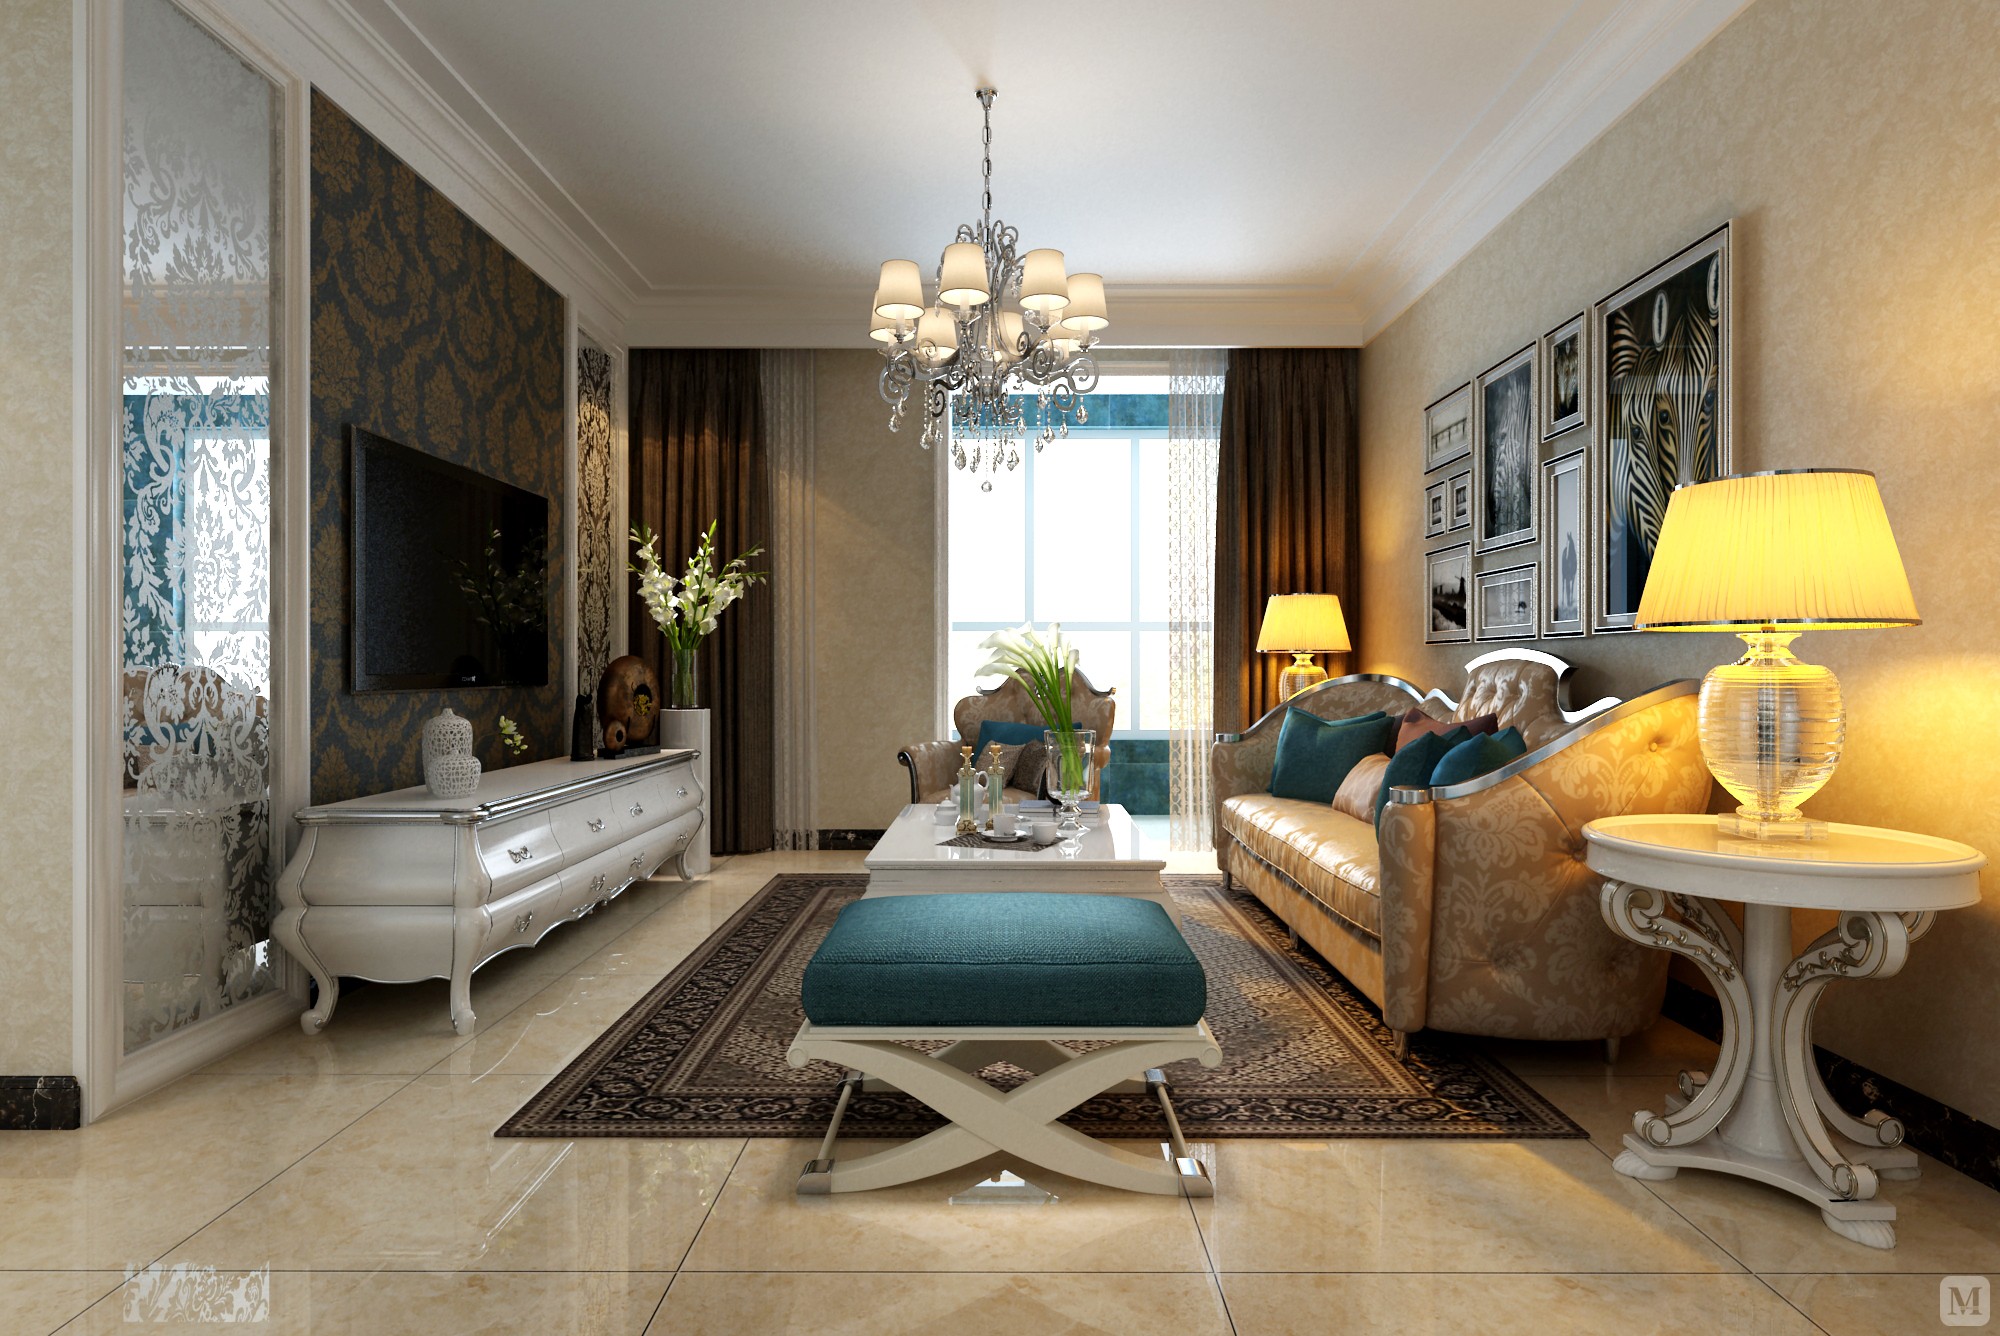 米色在装修配色中应用极为广泛，它适用任何风格，在这个案例中大面积的米色与蓝色的搭配干净优雅，简单的造型与家具很好的体现了欧式风格元素，简单利落而温馨。